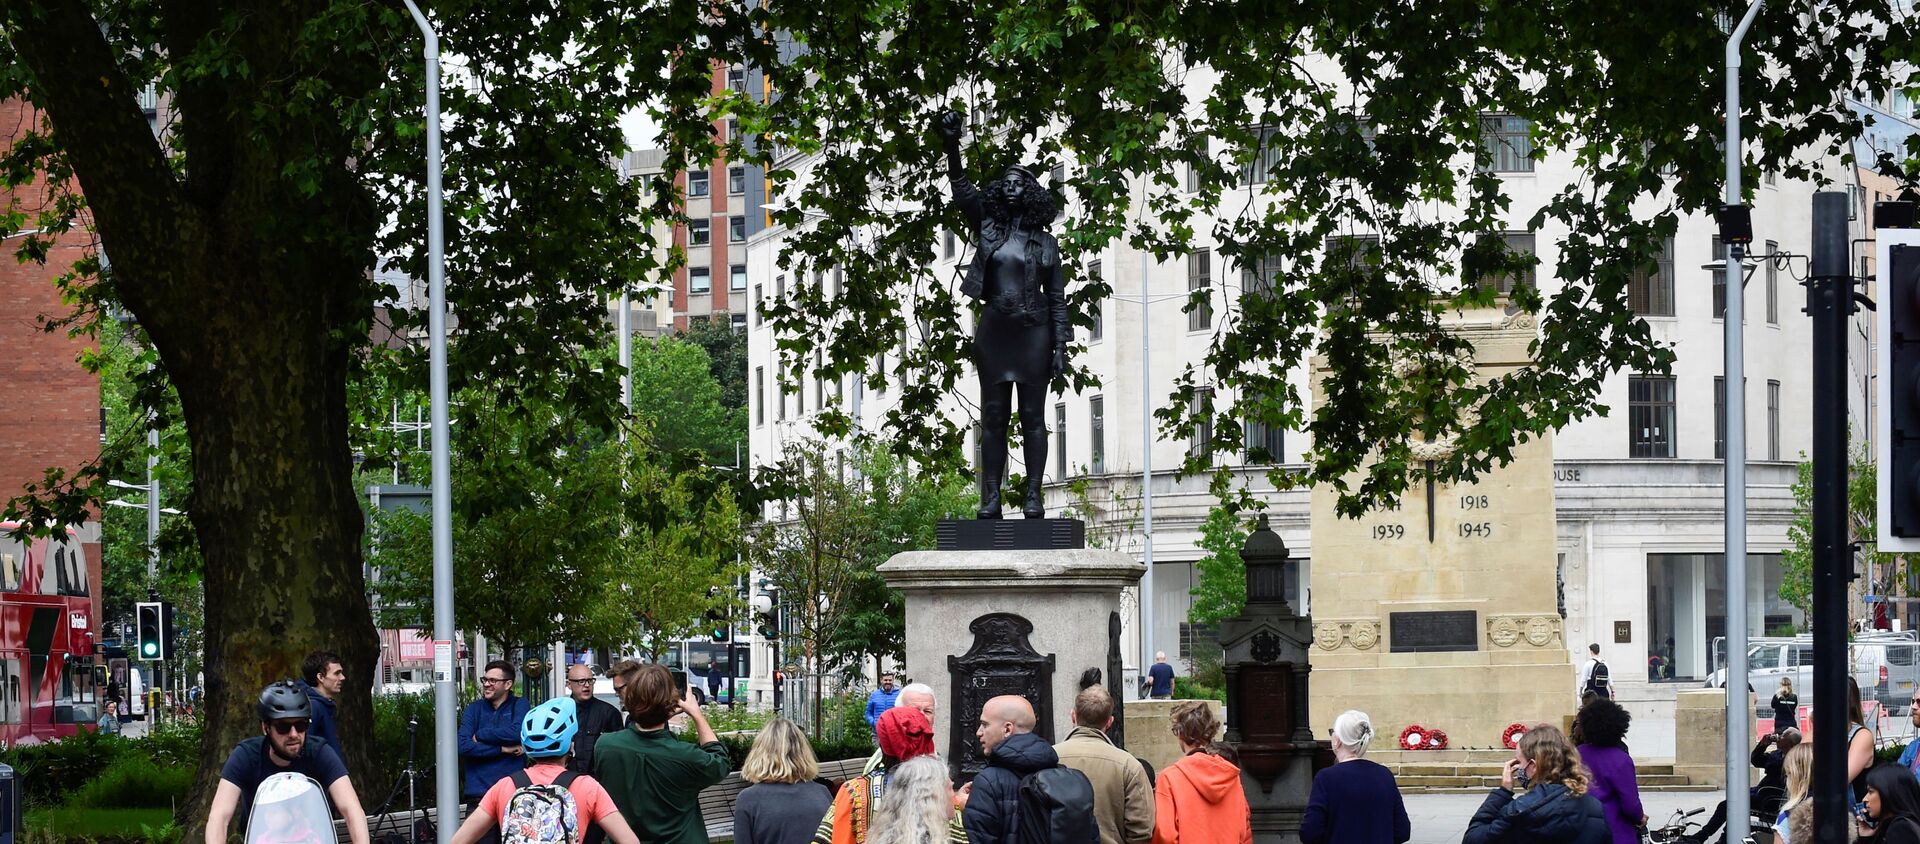 İngiltere'de ırkçılık karşıtı protestolar sırasında devrilen köle taciri Edward Colston'un heykelinin yerine dikilen Jen Reid heykeli - Sputnik Türkiye, 1920, 16.07.2020